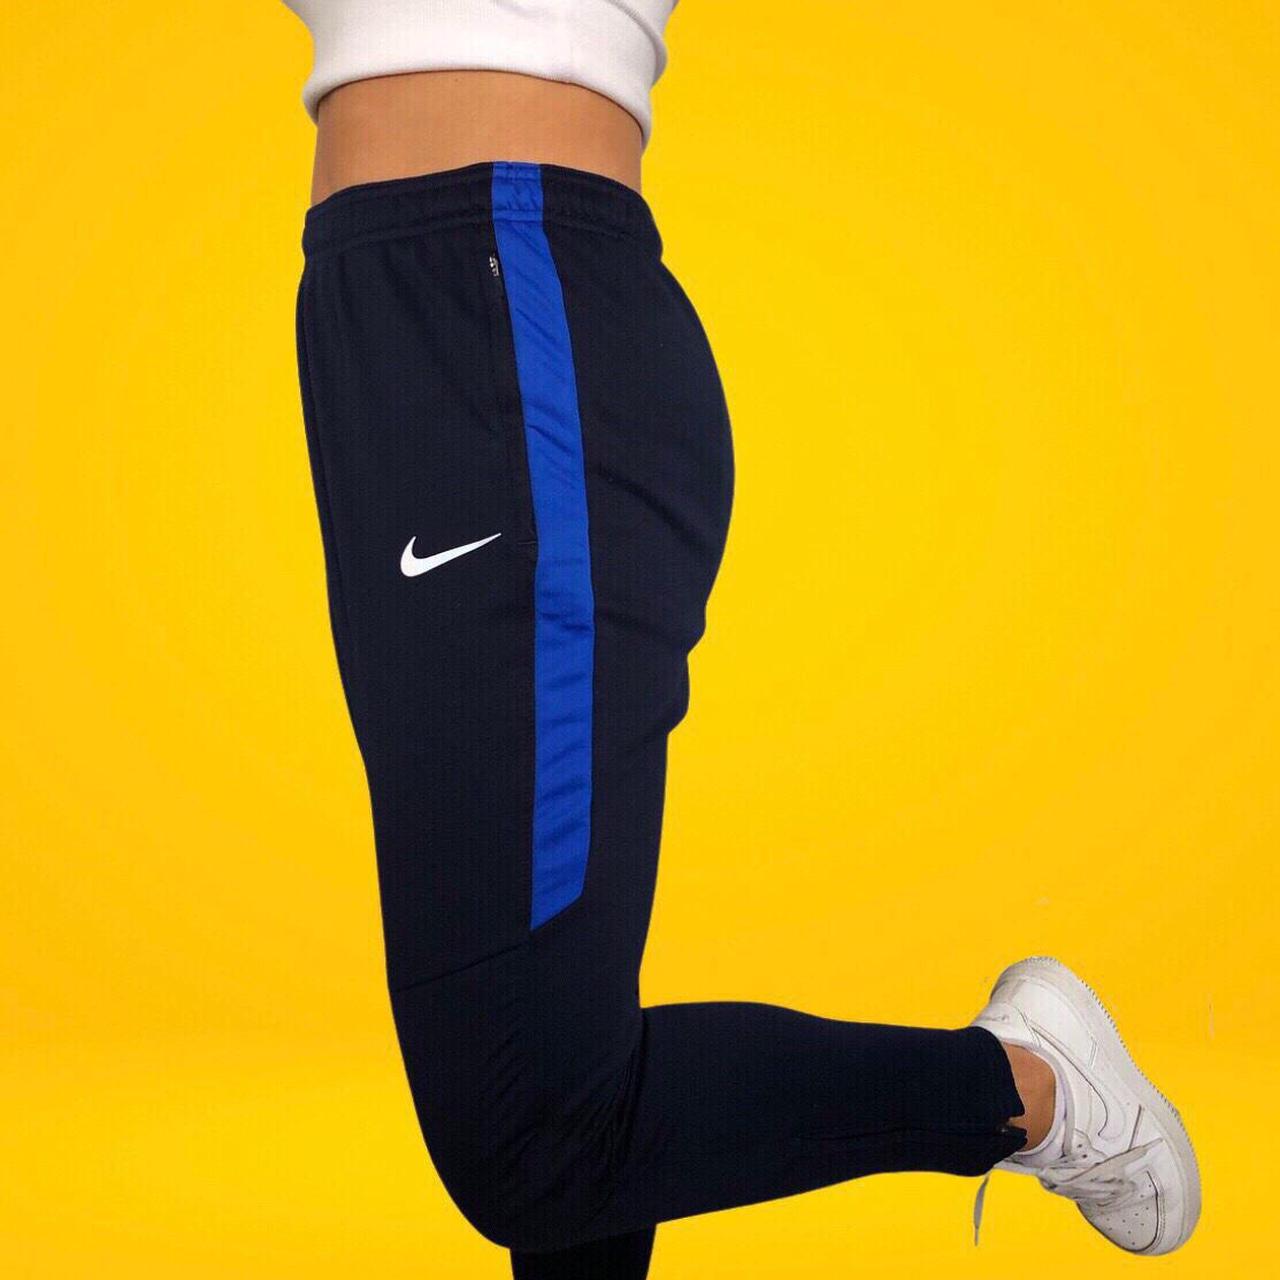 Nike tracksuit bottoms Vintage navy blue Nike... - Depop